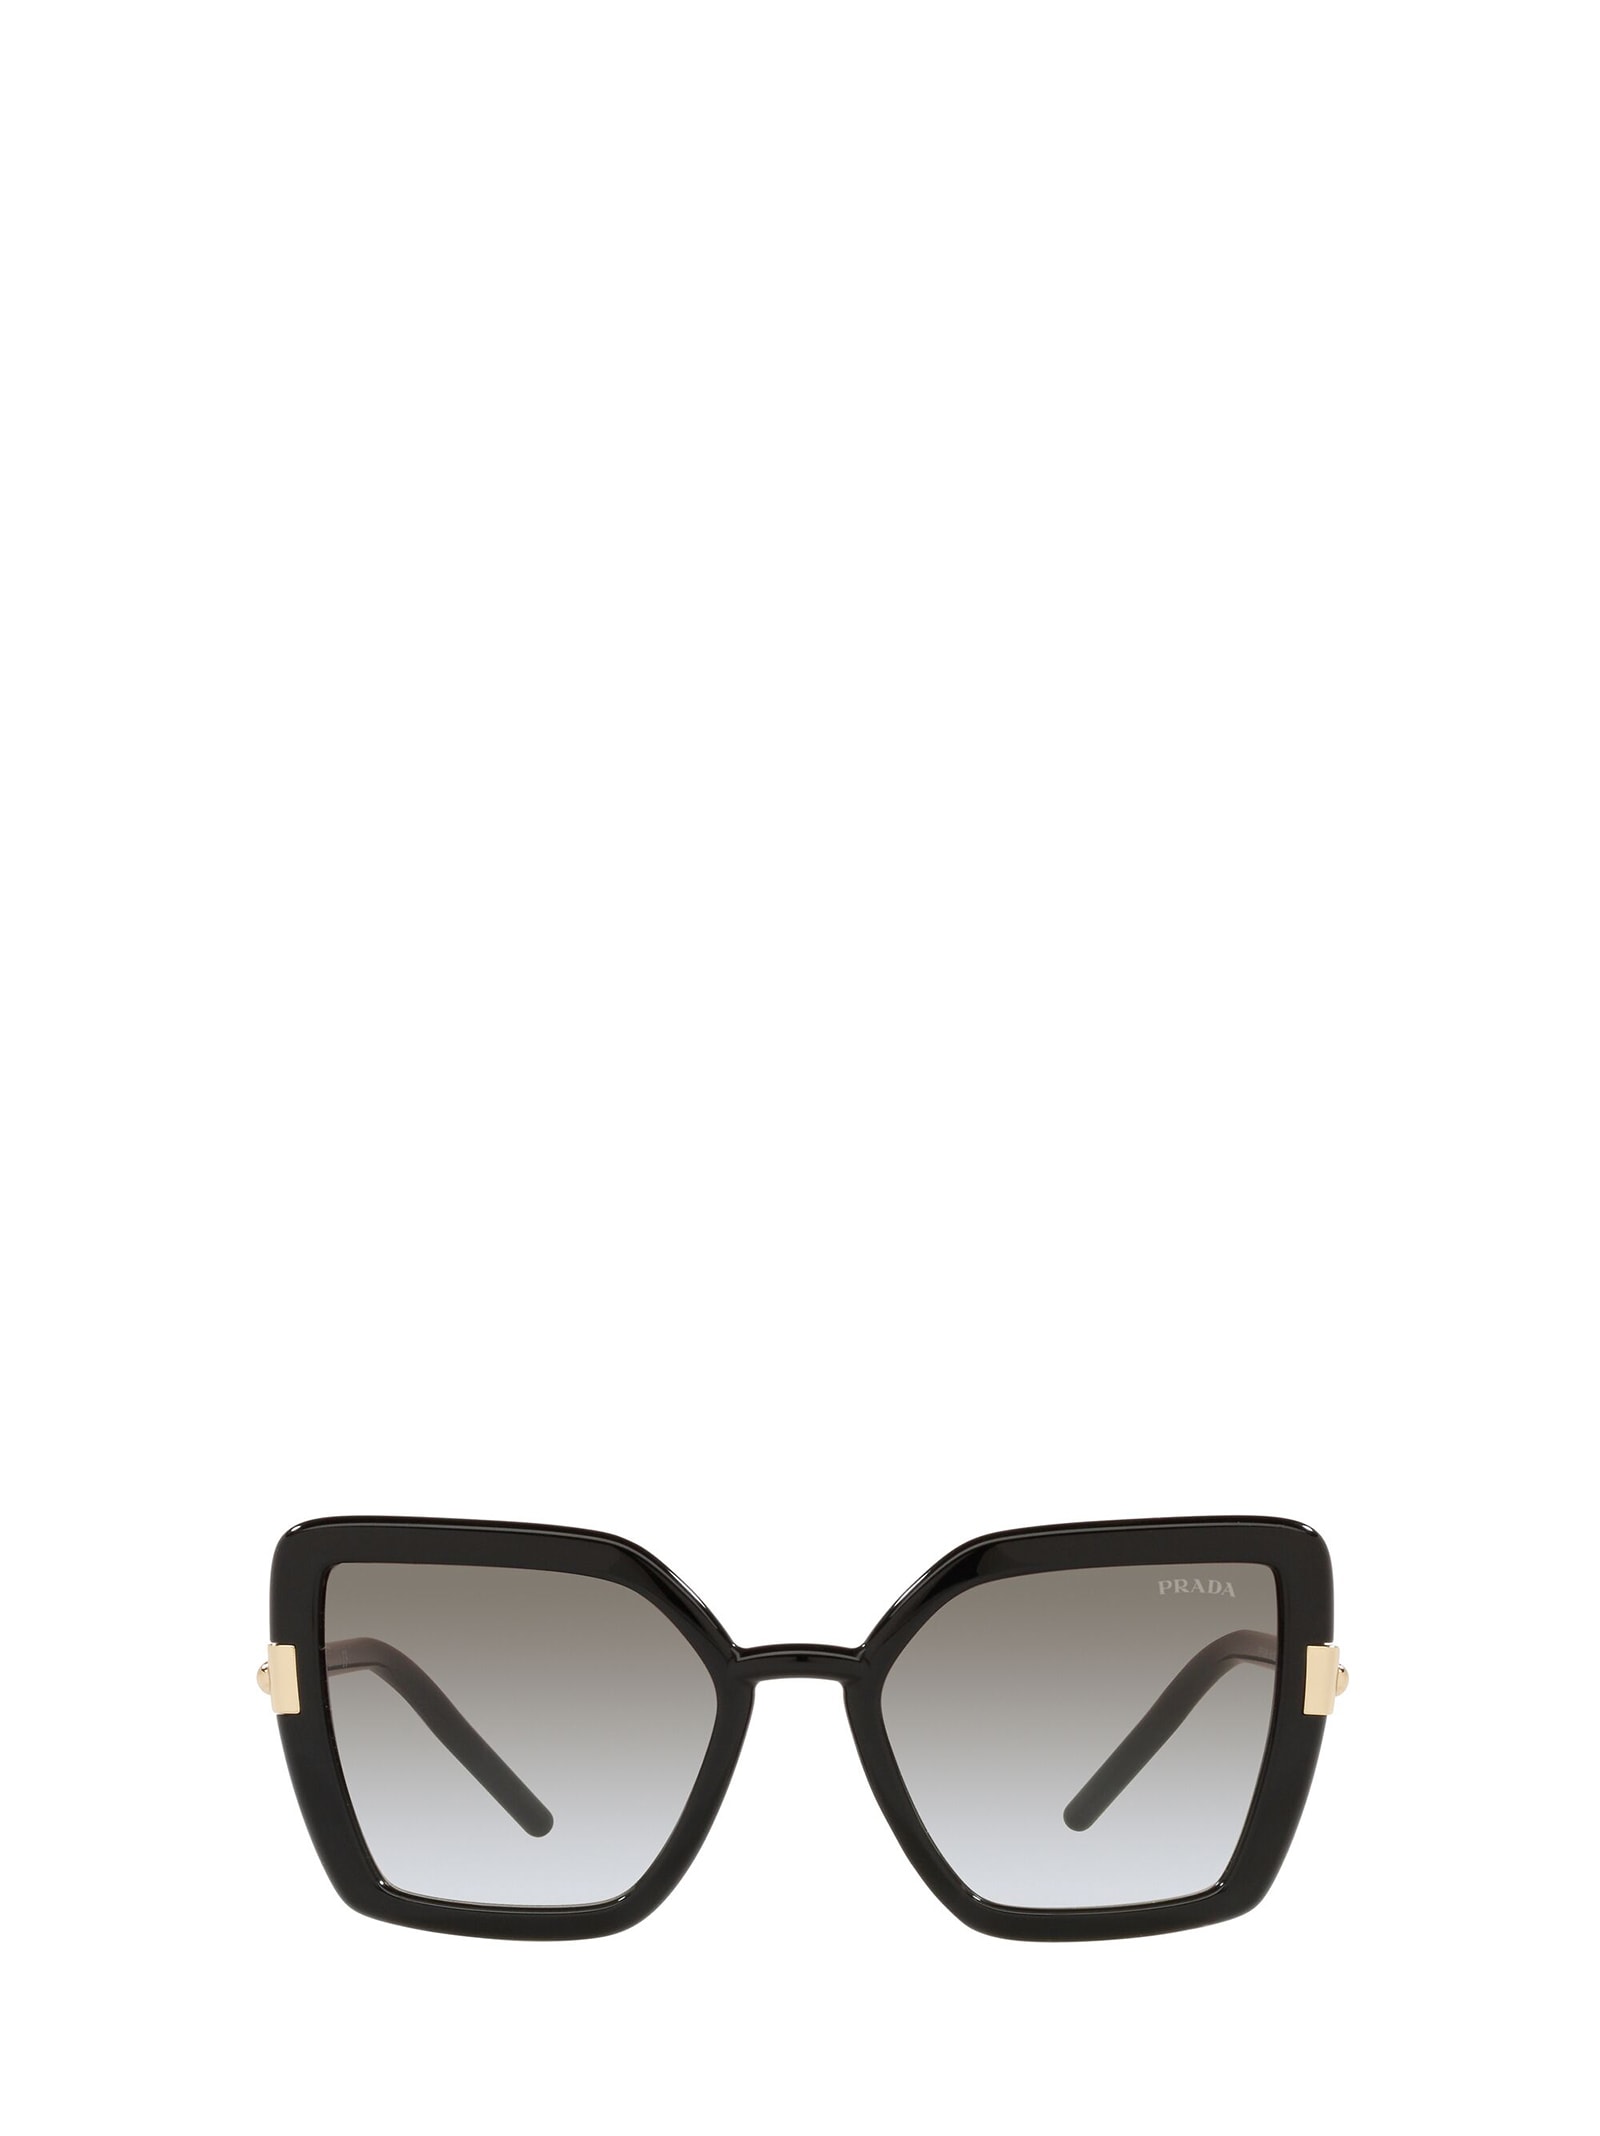 Prada Women's Polarized Sunglasses, Pr 09ws 54 In Black